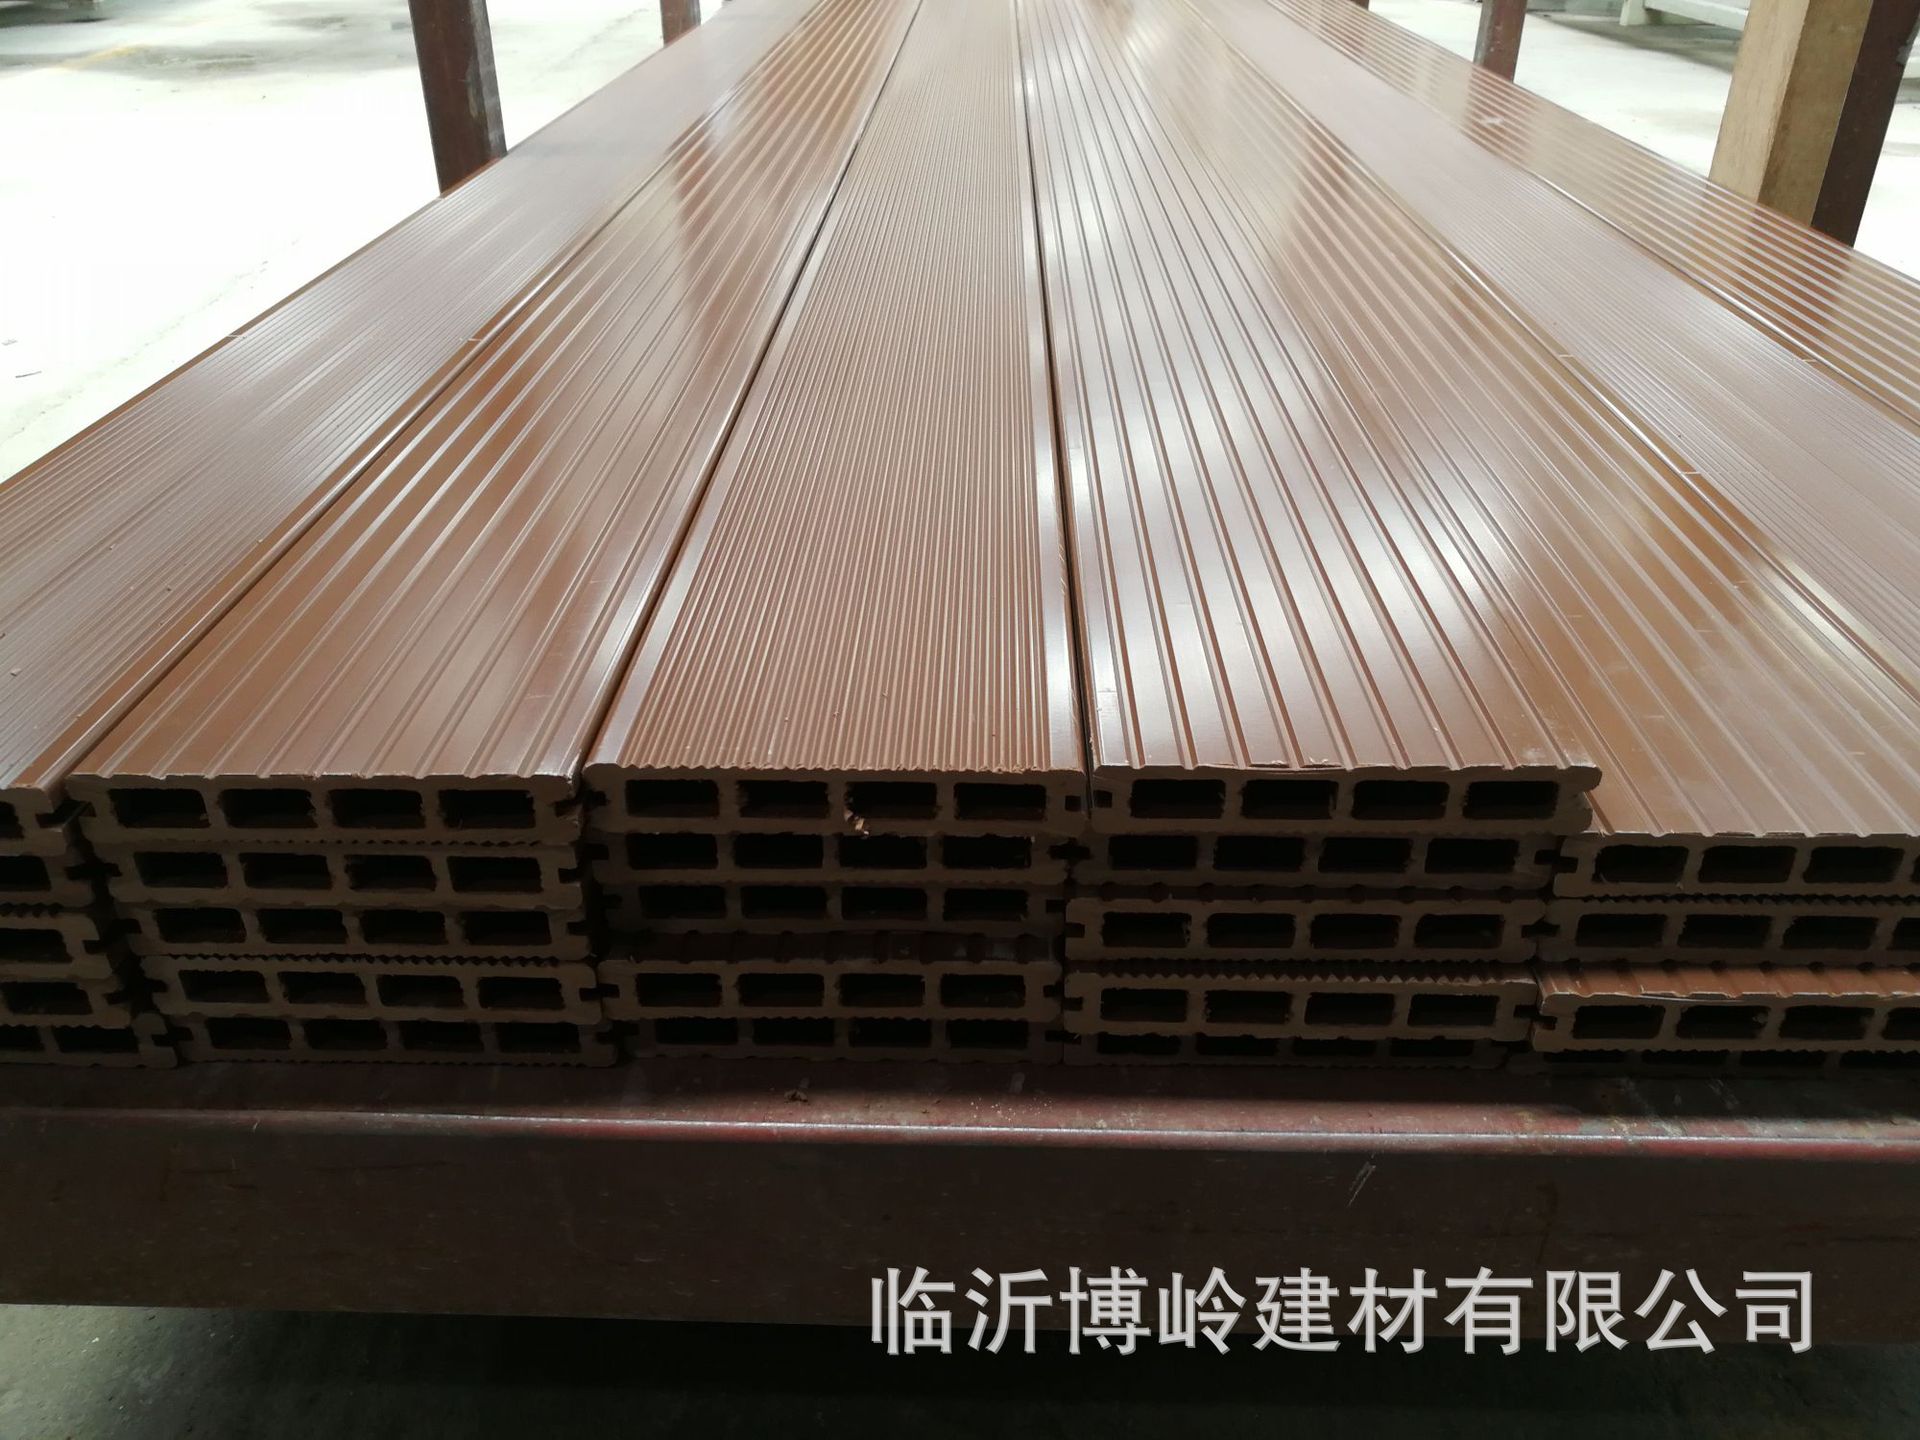 厂家直销塑木地板 户外140*25六孔圆孔地板 防水防滑 WPC木塑板材示例图4